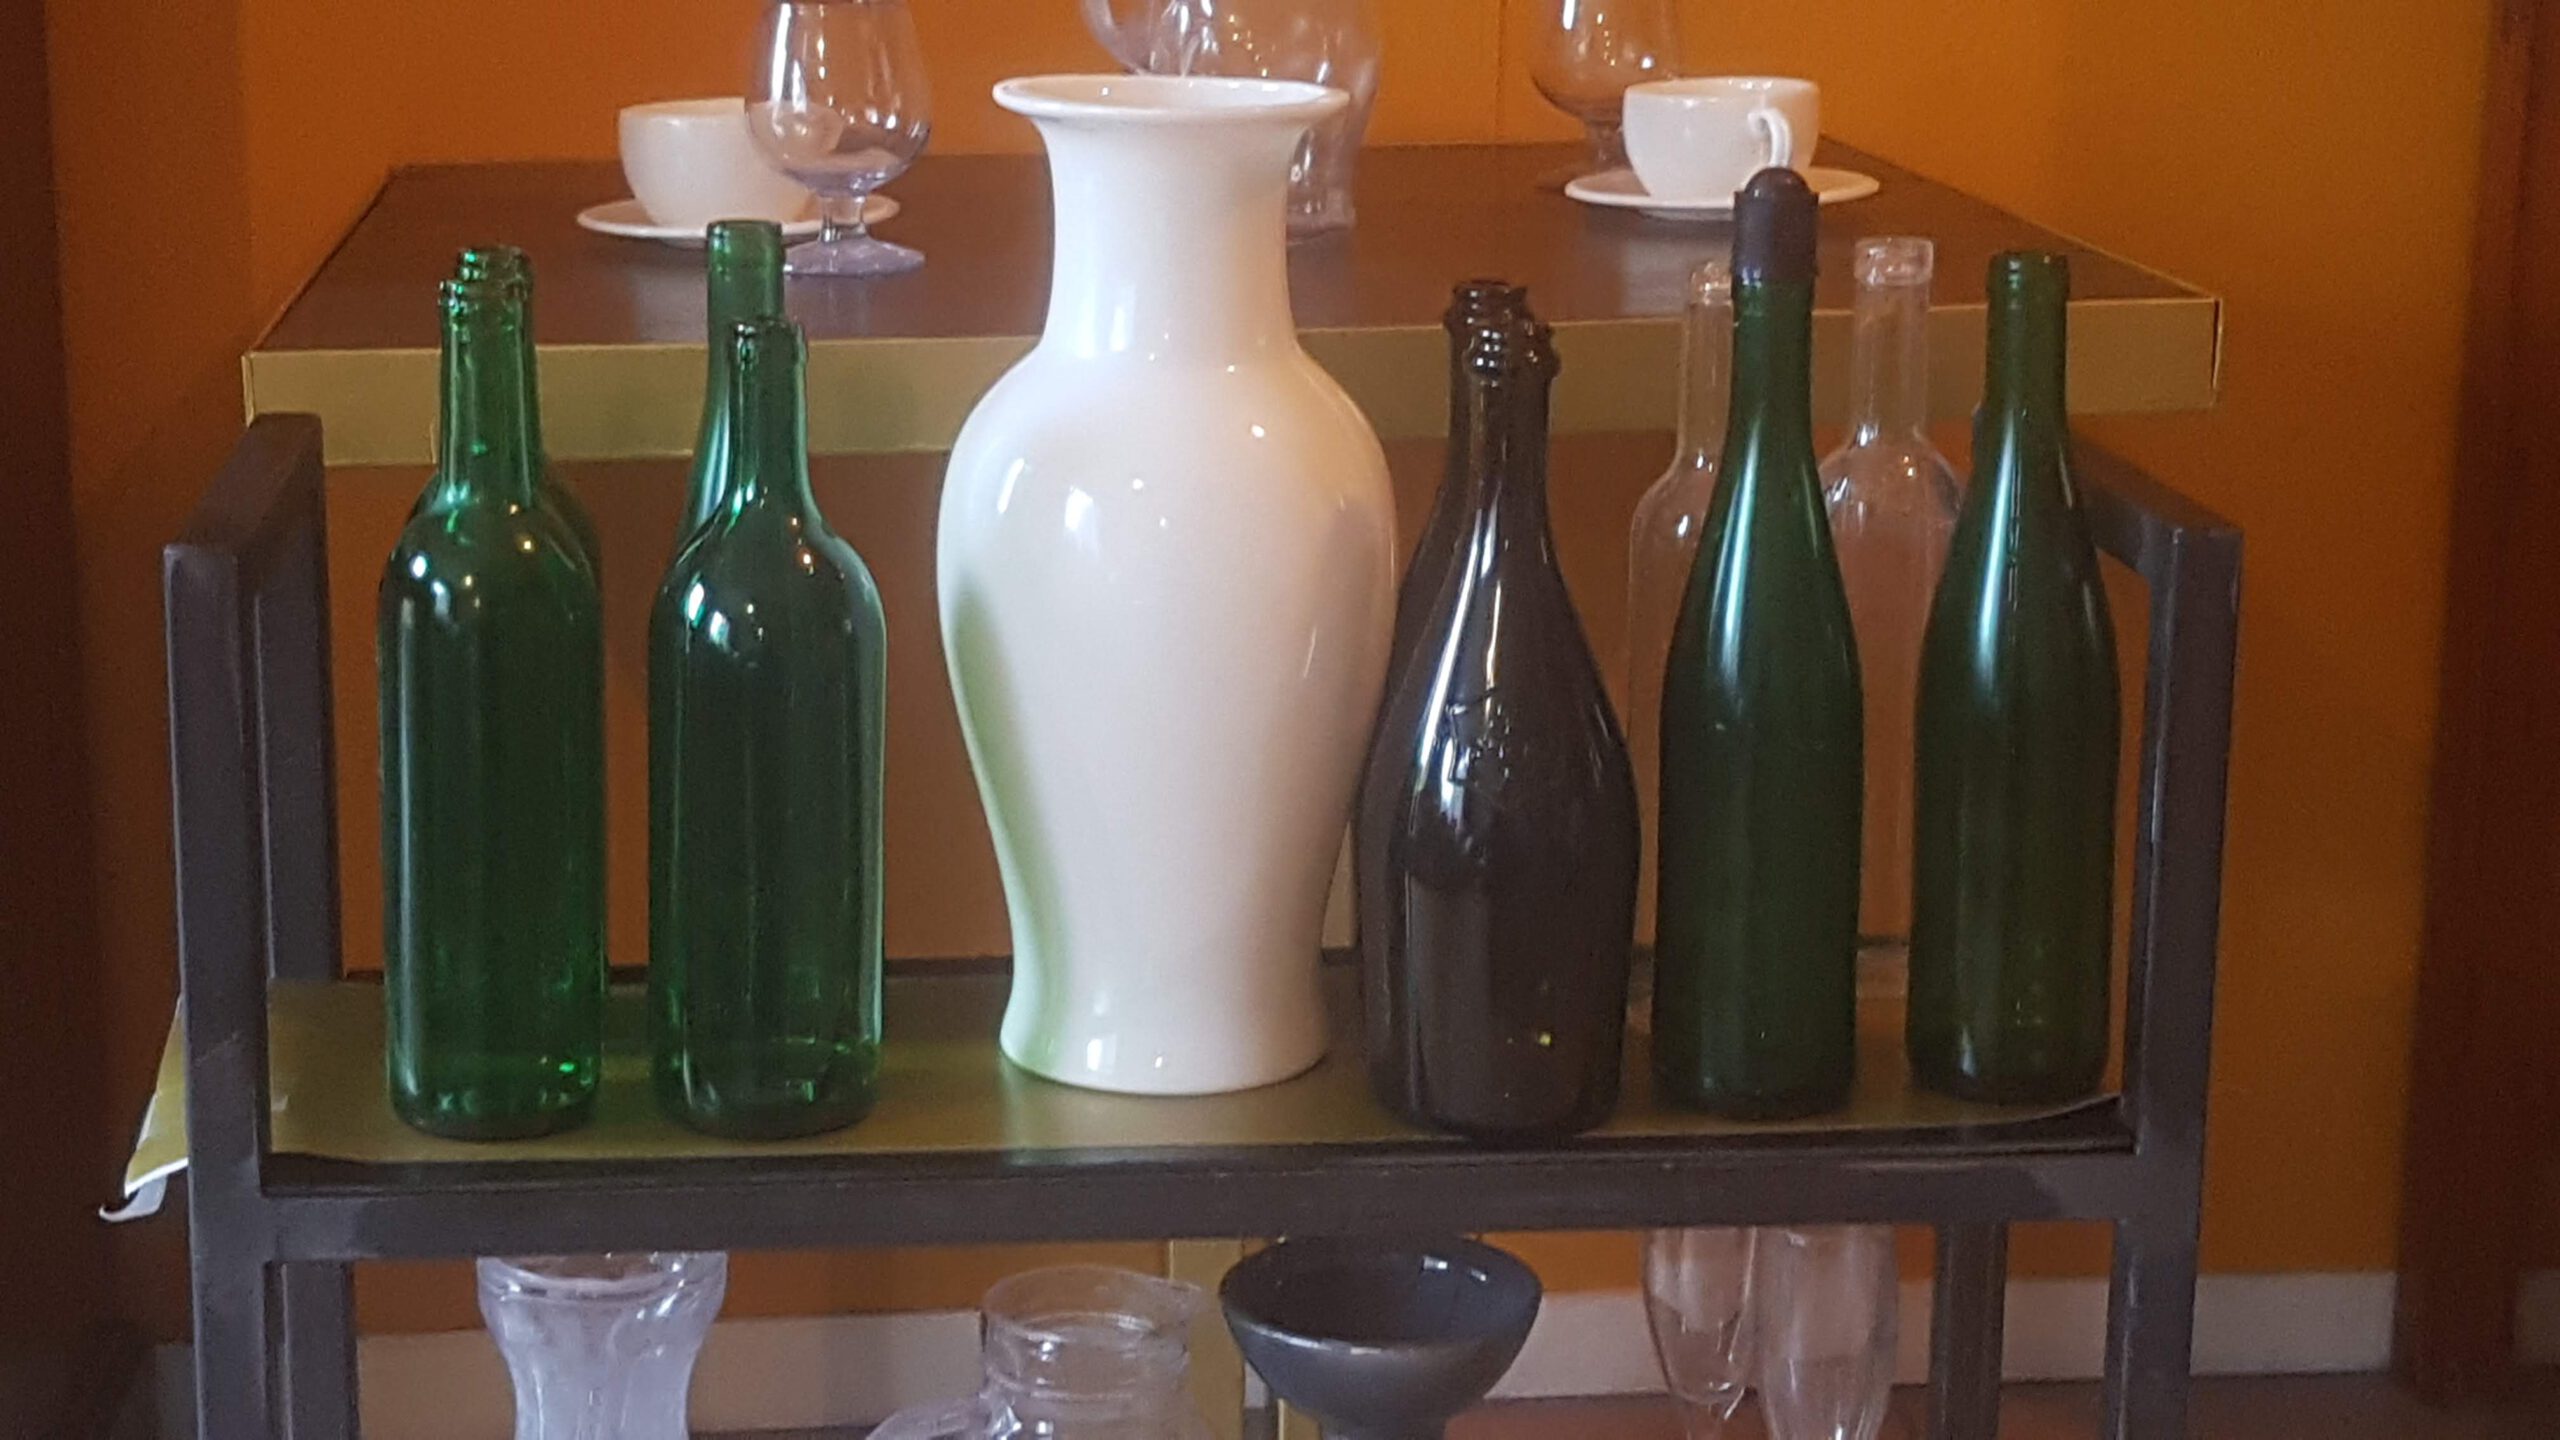 Sugar glass (Breakaway's) vases, windows, bottles and glasses.